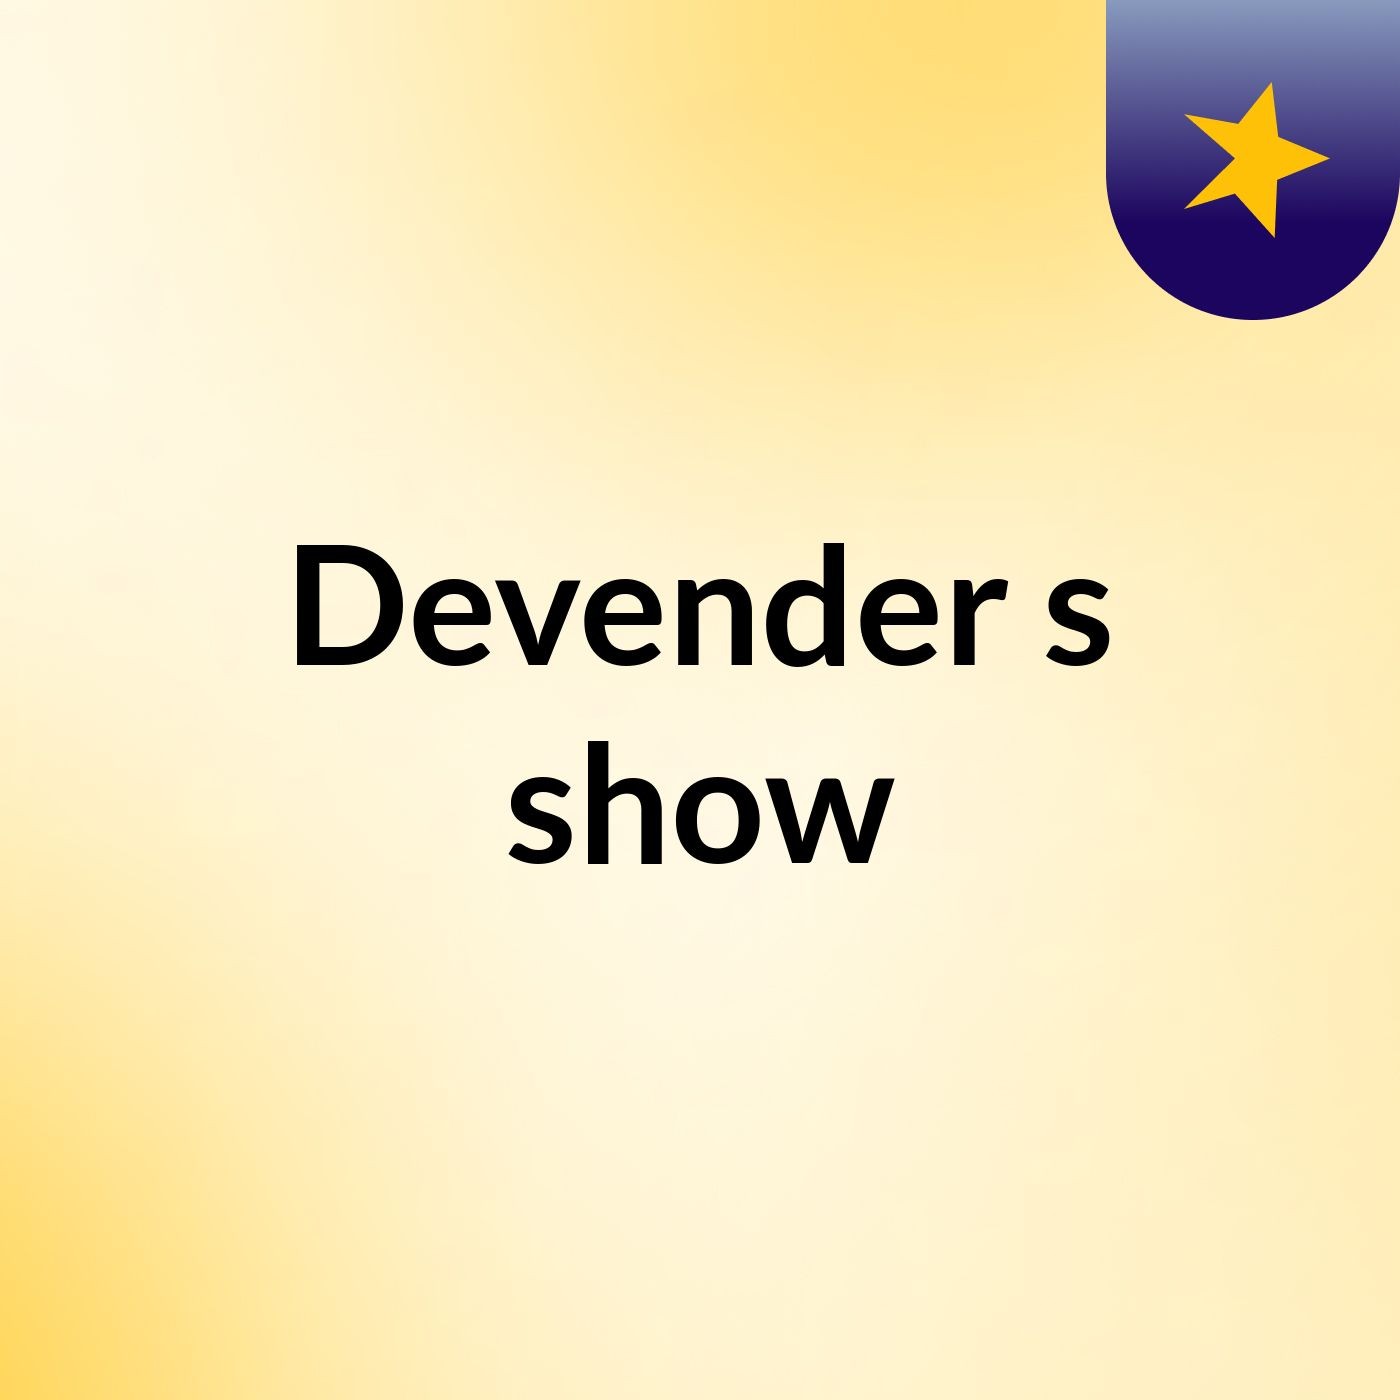 Devender's show